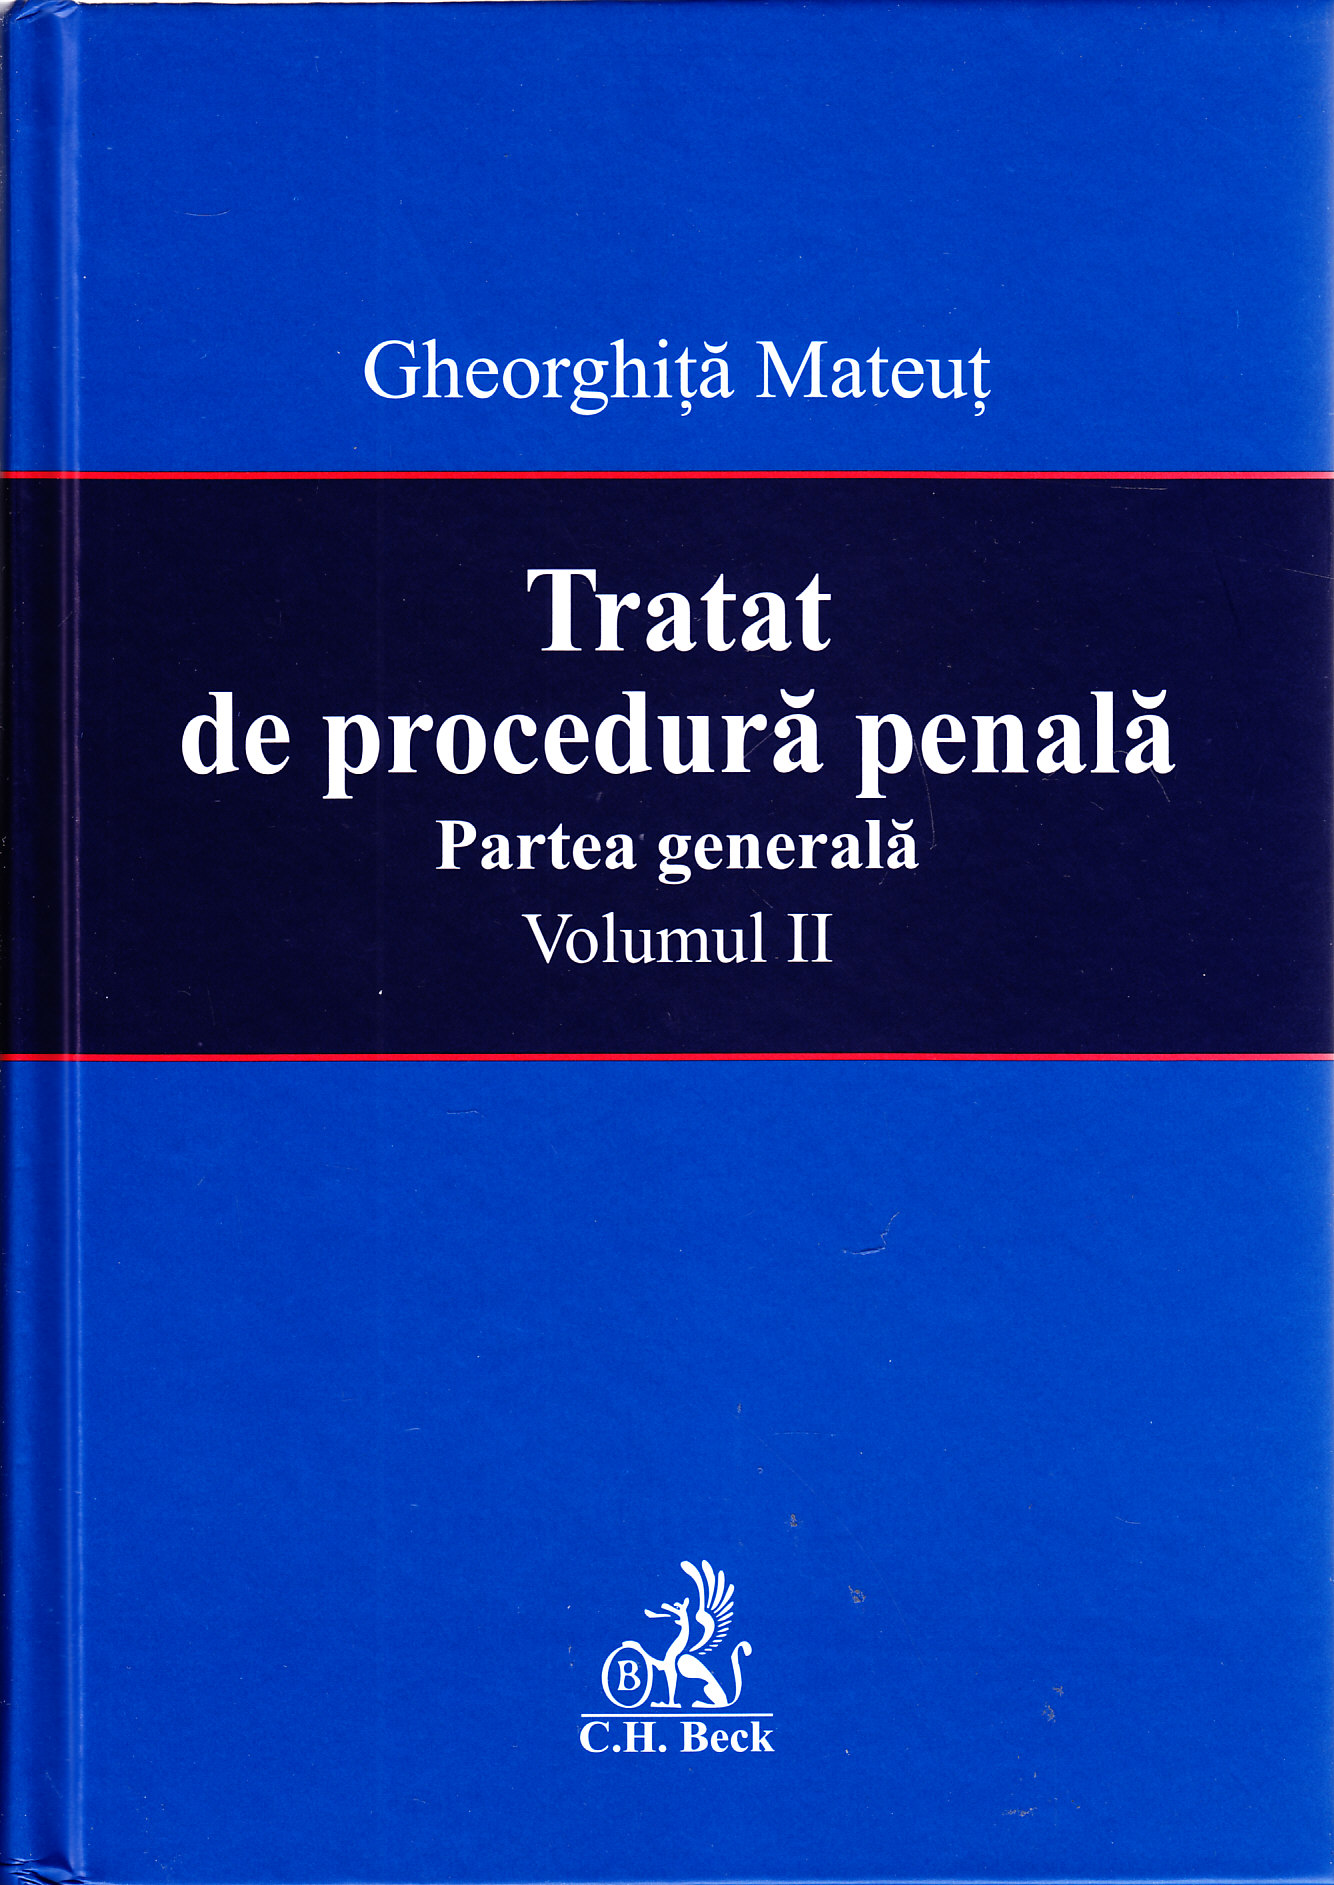 Tratat de procedura penala. Partea generala vol. 2 - Gheorghita Mateut